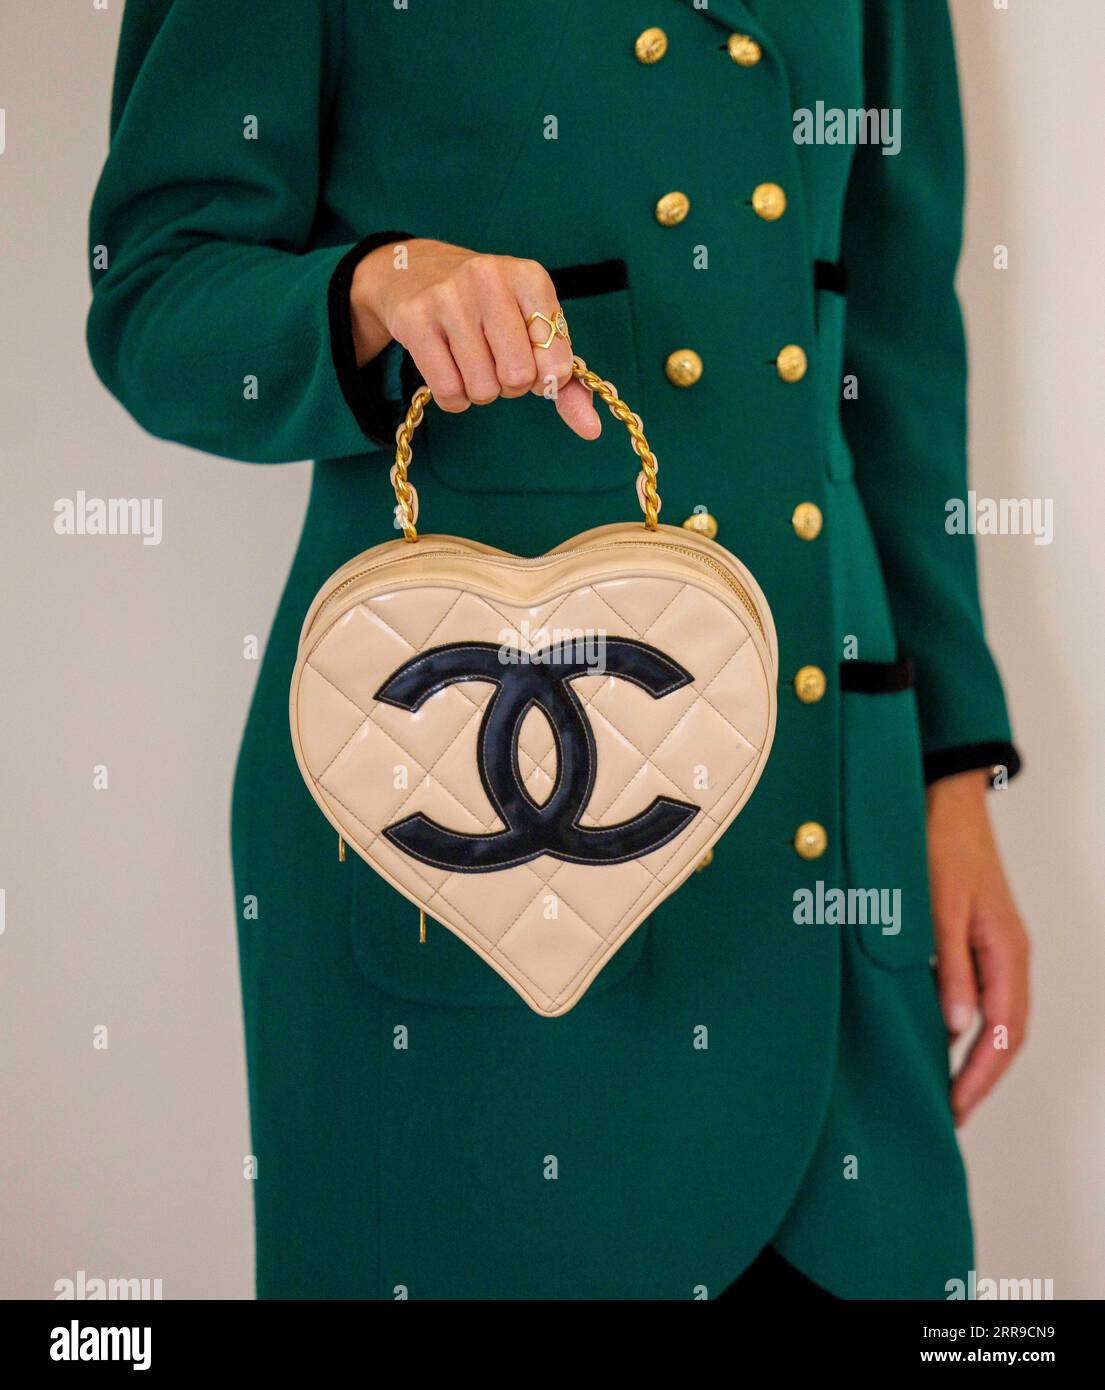 Londra, Regno Unito 7 settembre 2023 Karl Lagerfeld per Chanel; A beige Patent Leather Heart Vanity Bag, Primavera 1995, stimato £ 15.000-20.000 Bonham è pronto a far luce sul mondo di Chanel. In coincidenza con l'apertura della mostra V&AÕs Gabrielle Chanel Fashion Manifesto, Bonhams Knightsbridge ospiterà The Art of Luxury: Chanel, la loro seconda vendita londinese dedicata all'artigianato di Chanel. I saldi online del 11-21 settembre presenteranno articoli di lusso della Maison, tra cui borse, gioielli e una selezione di alta moda, tutti realizzati a mano nell'atelier Chanel. Foto Stock